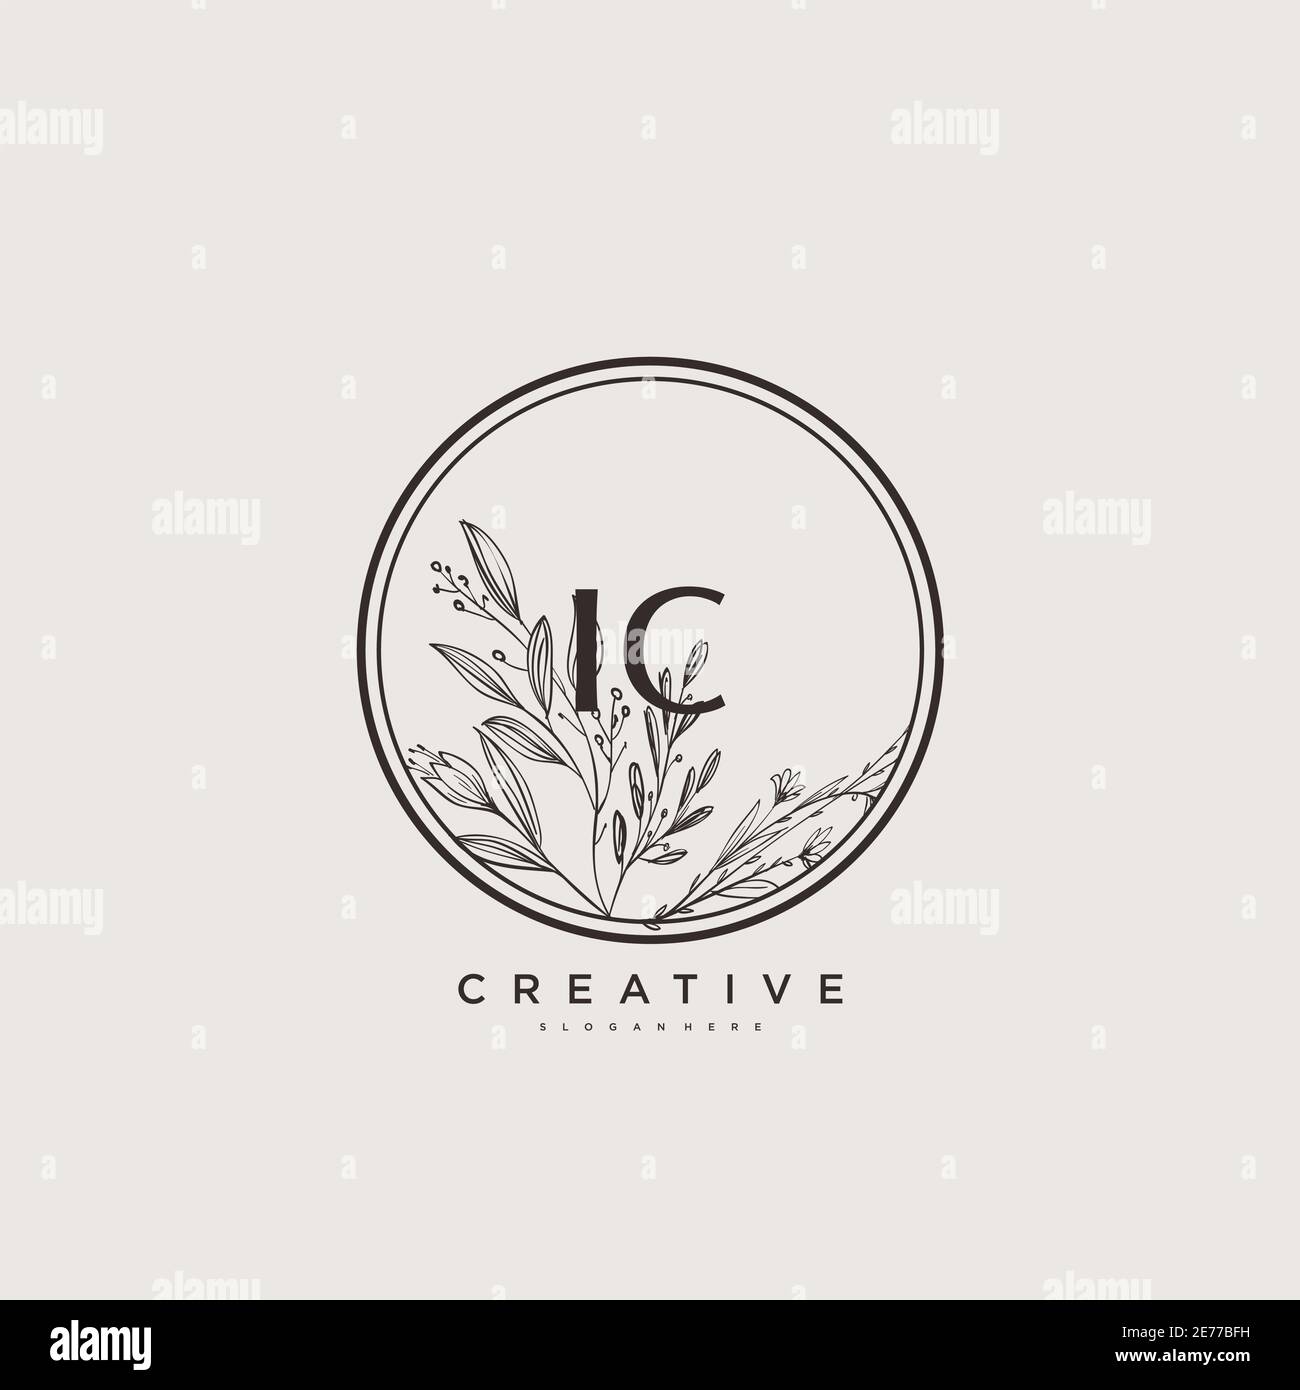 IC Beauty vector logo initial art, écriture logo de signature initiale, mariage, mode, joaillierly, boutique, floral et botanique avec la température créative Illustration de Vecteur